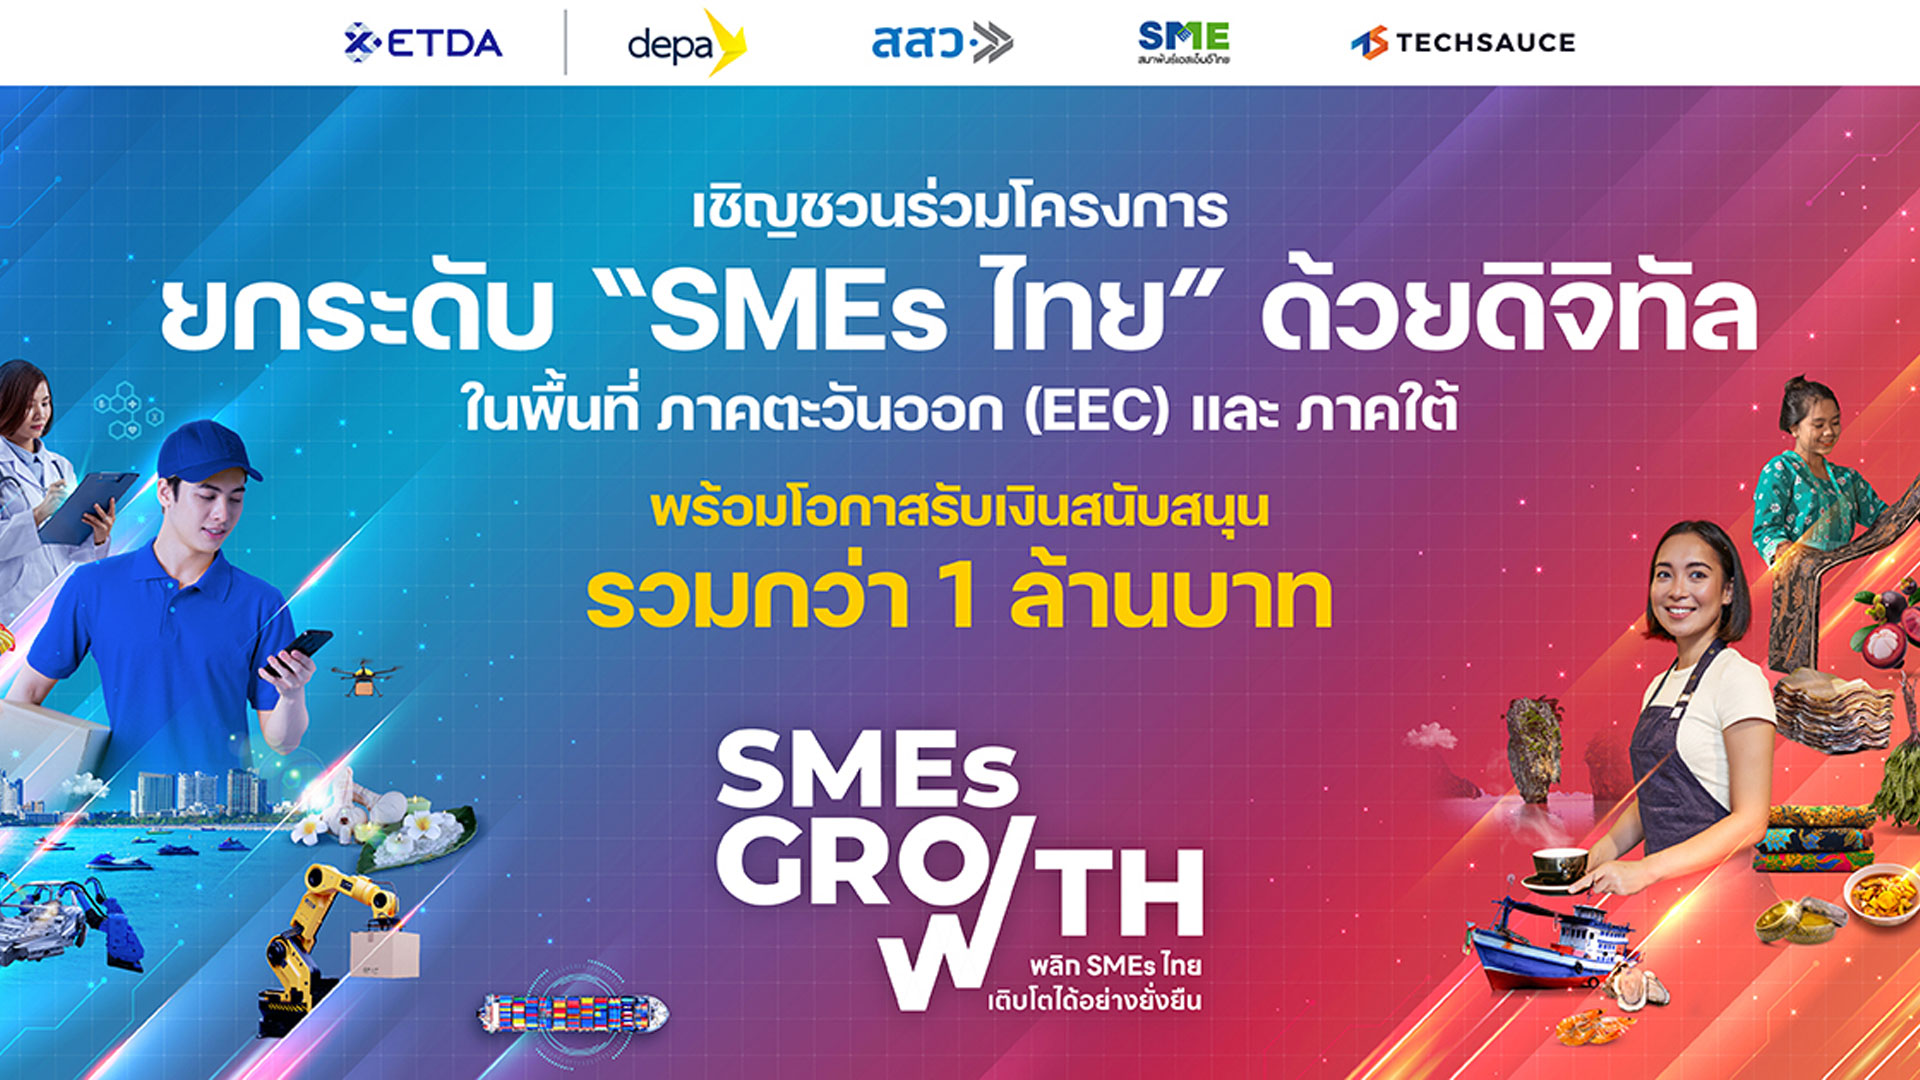 ETDA เปิดตัว SMEs GROWTH ชวนผู้ประกอบการไทย ยกระดับนวัตกรรมด้านดิจิทัลเชิงพื้นที่ เพิ่มมูลค่าทางเศรษฐกิจดิจิทัล